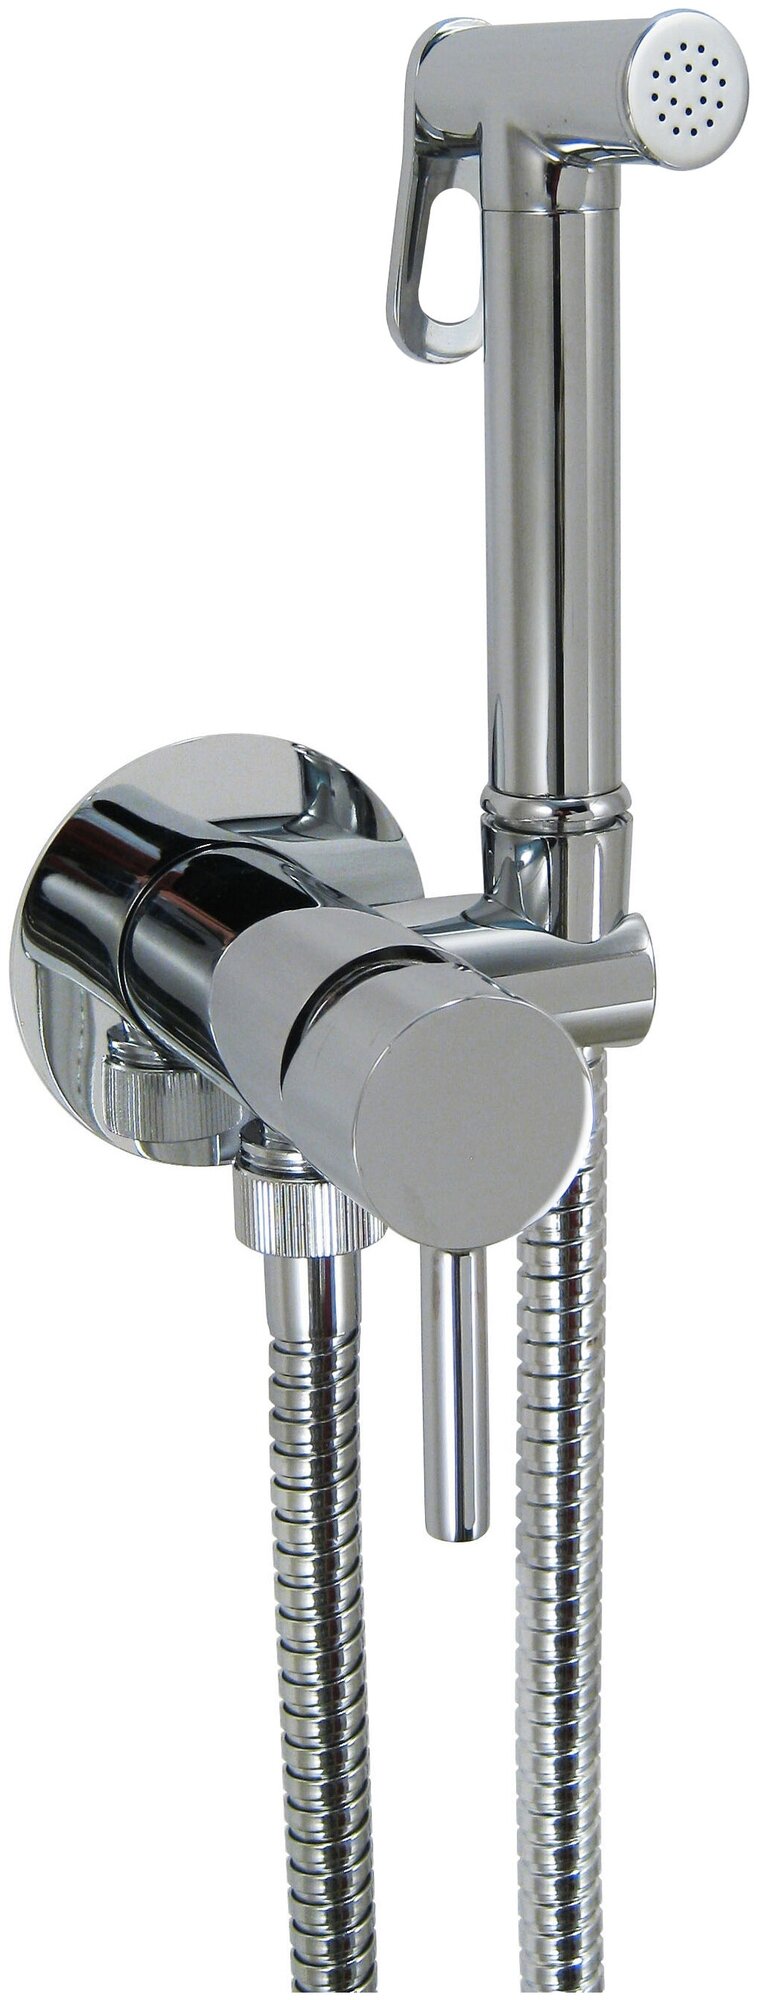 Гигиенический душ Giulini Futuro FSH25 однорычажный смеситель, лейка, шланг, цвет: хром